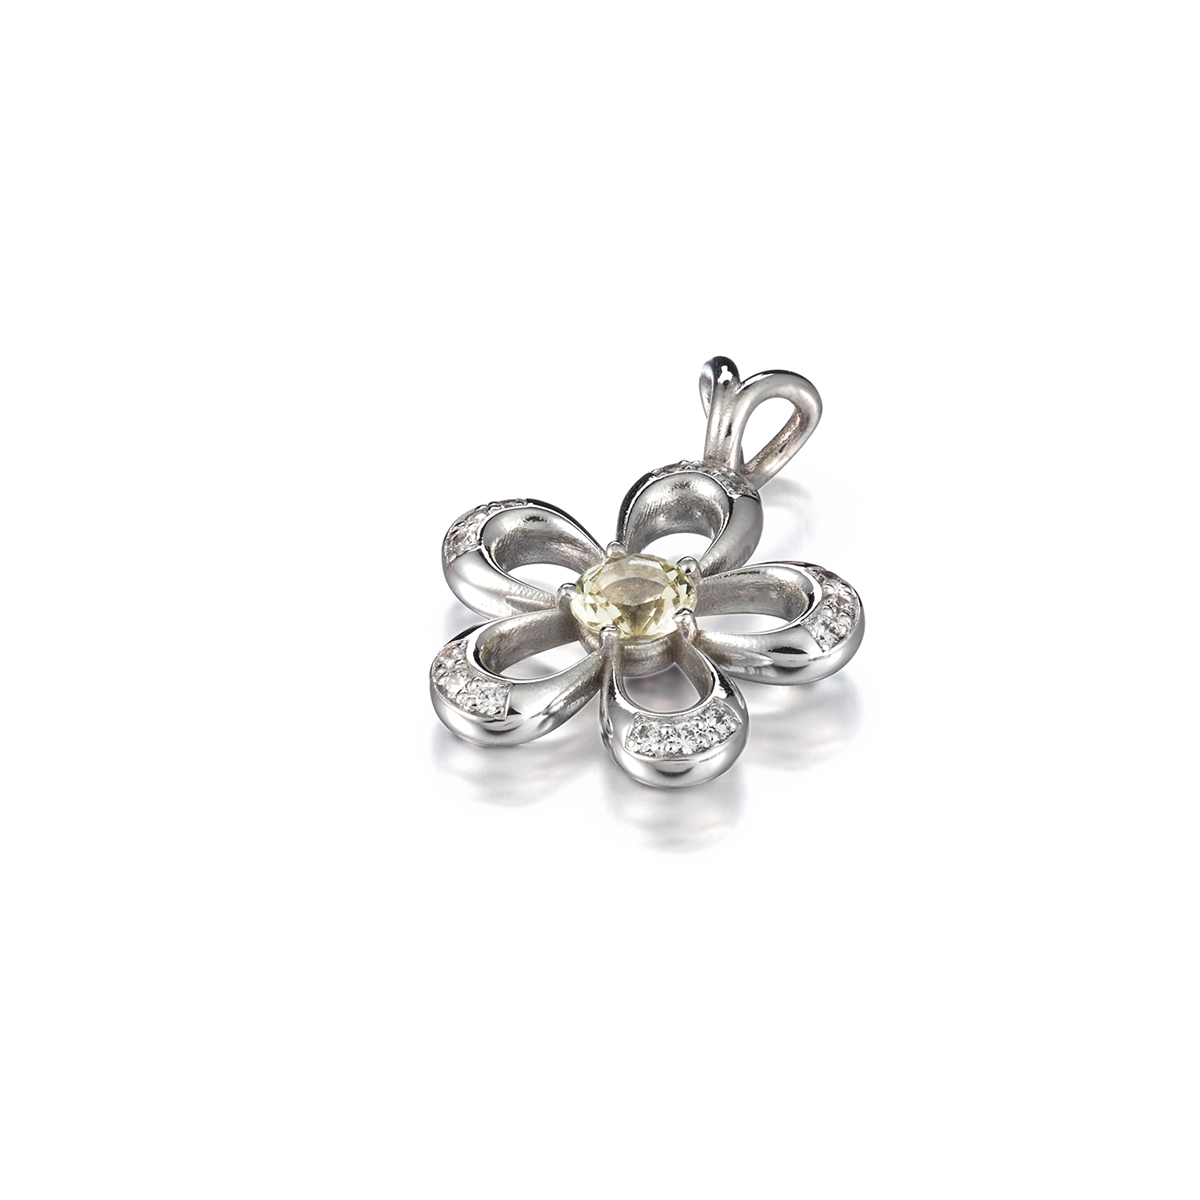 Juuret - Roots Golden Flower pendant with diamonds and heliodor